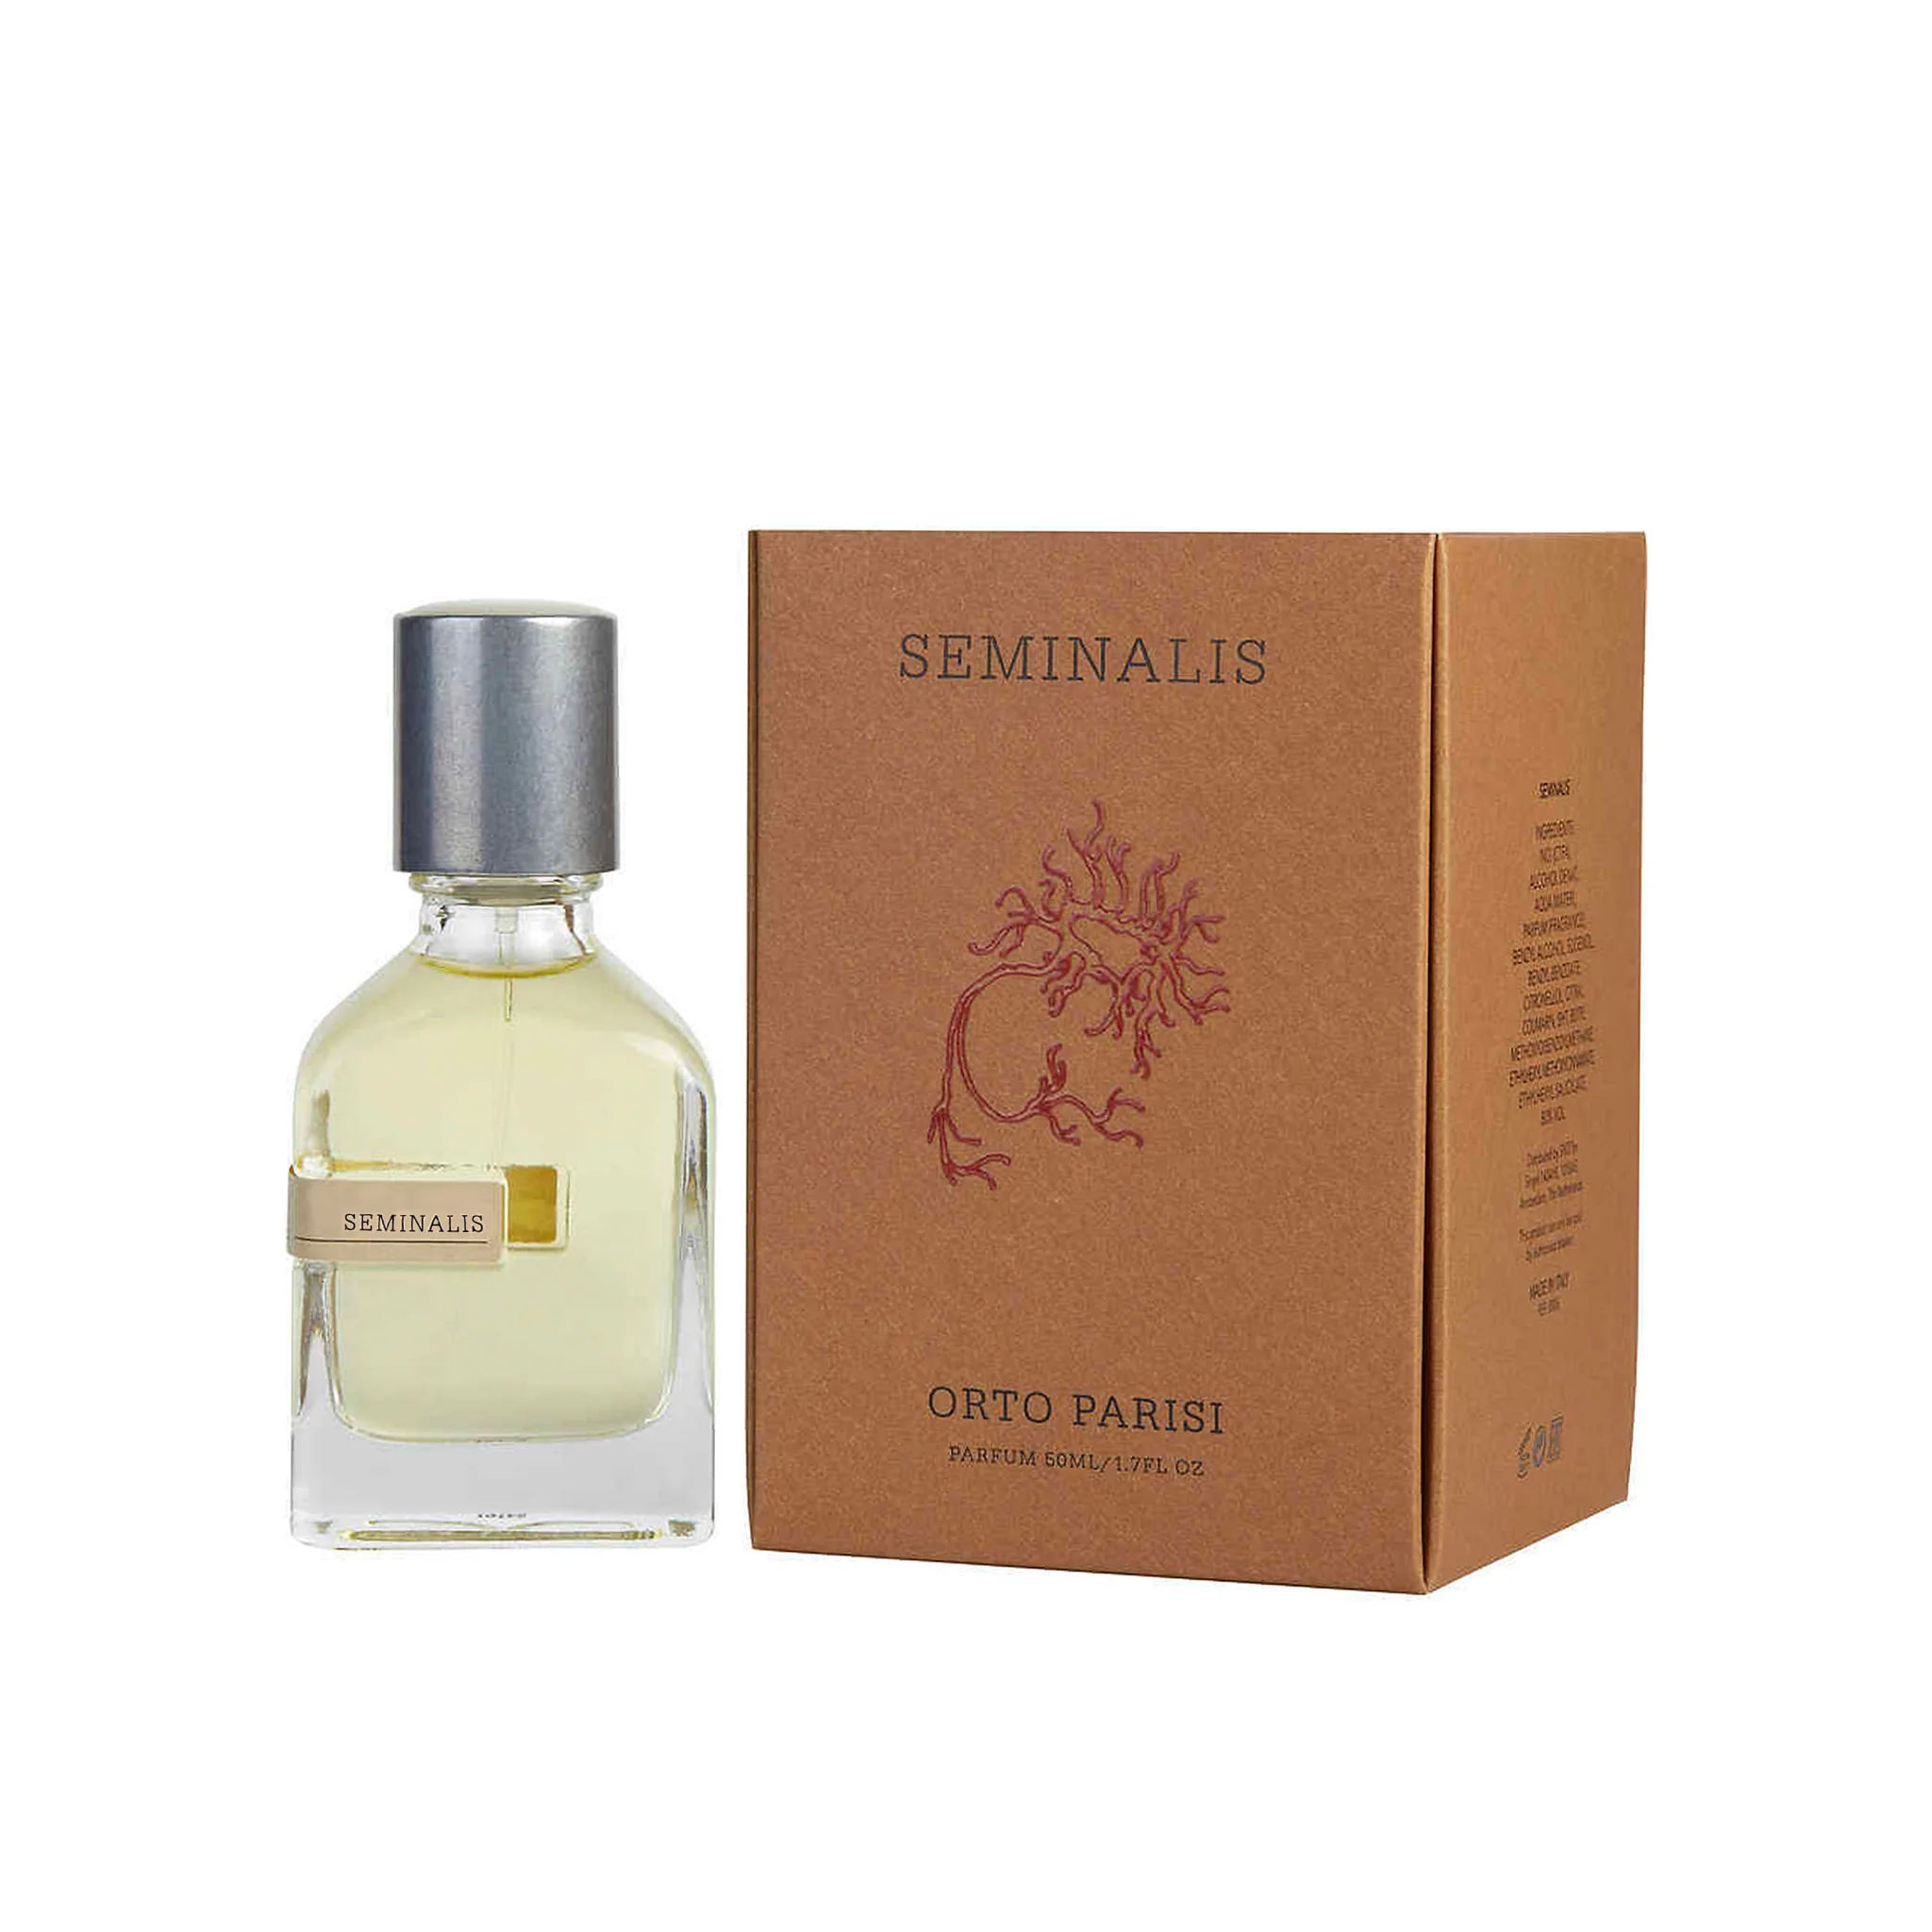 Orto Parisi Seminalis - Parfum 50 ml